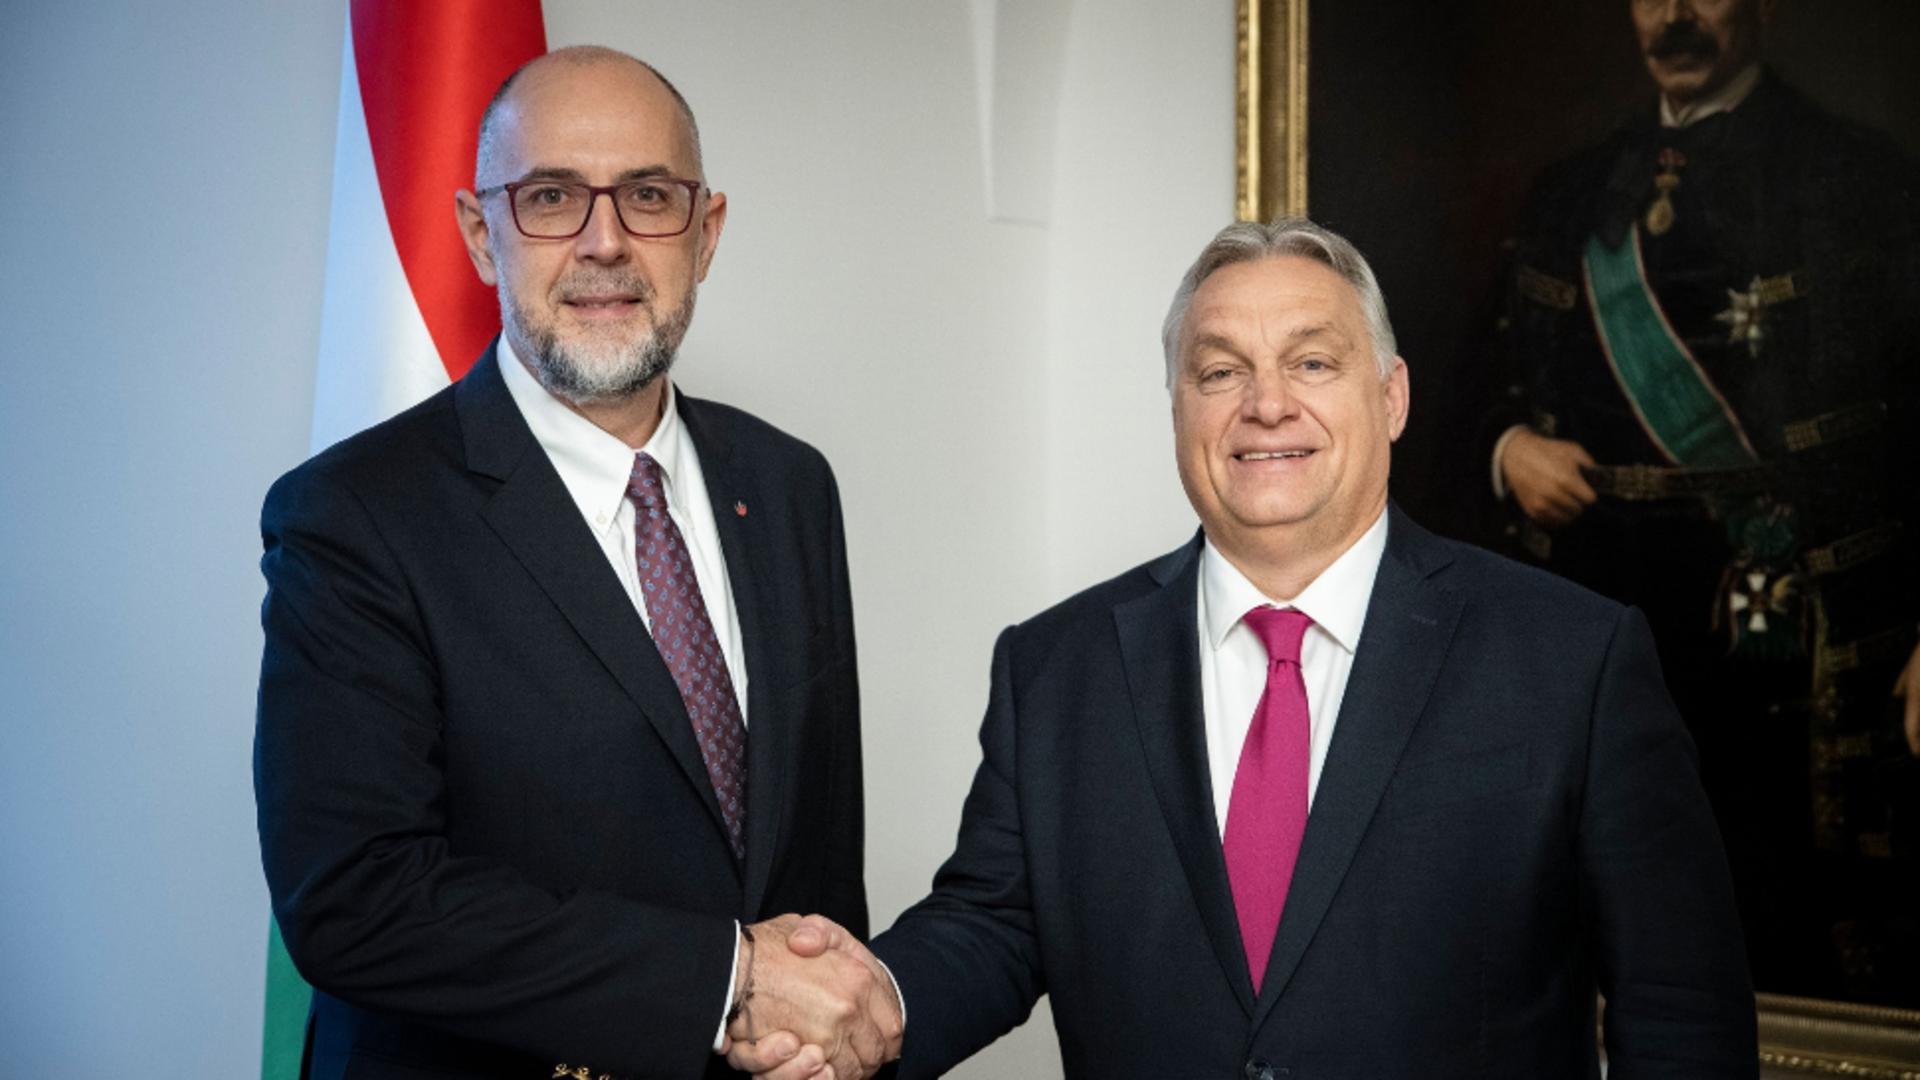 Kelemen Hunor i-a cerut premierului maghiar, Viktor Orban, să sprijine România în procesul de aderare la Schengen